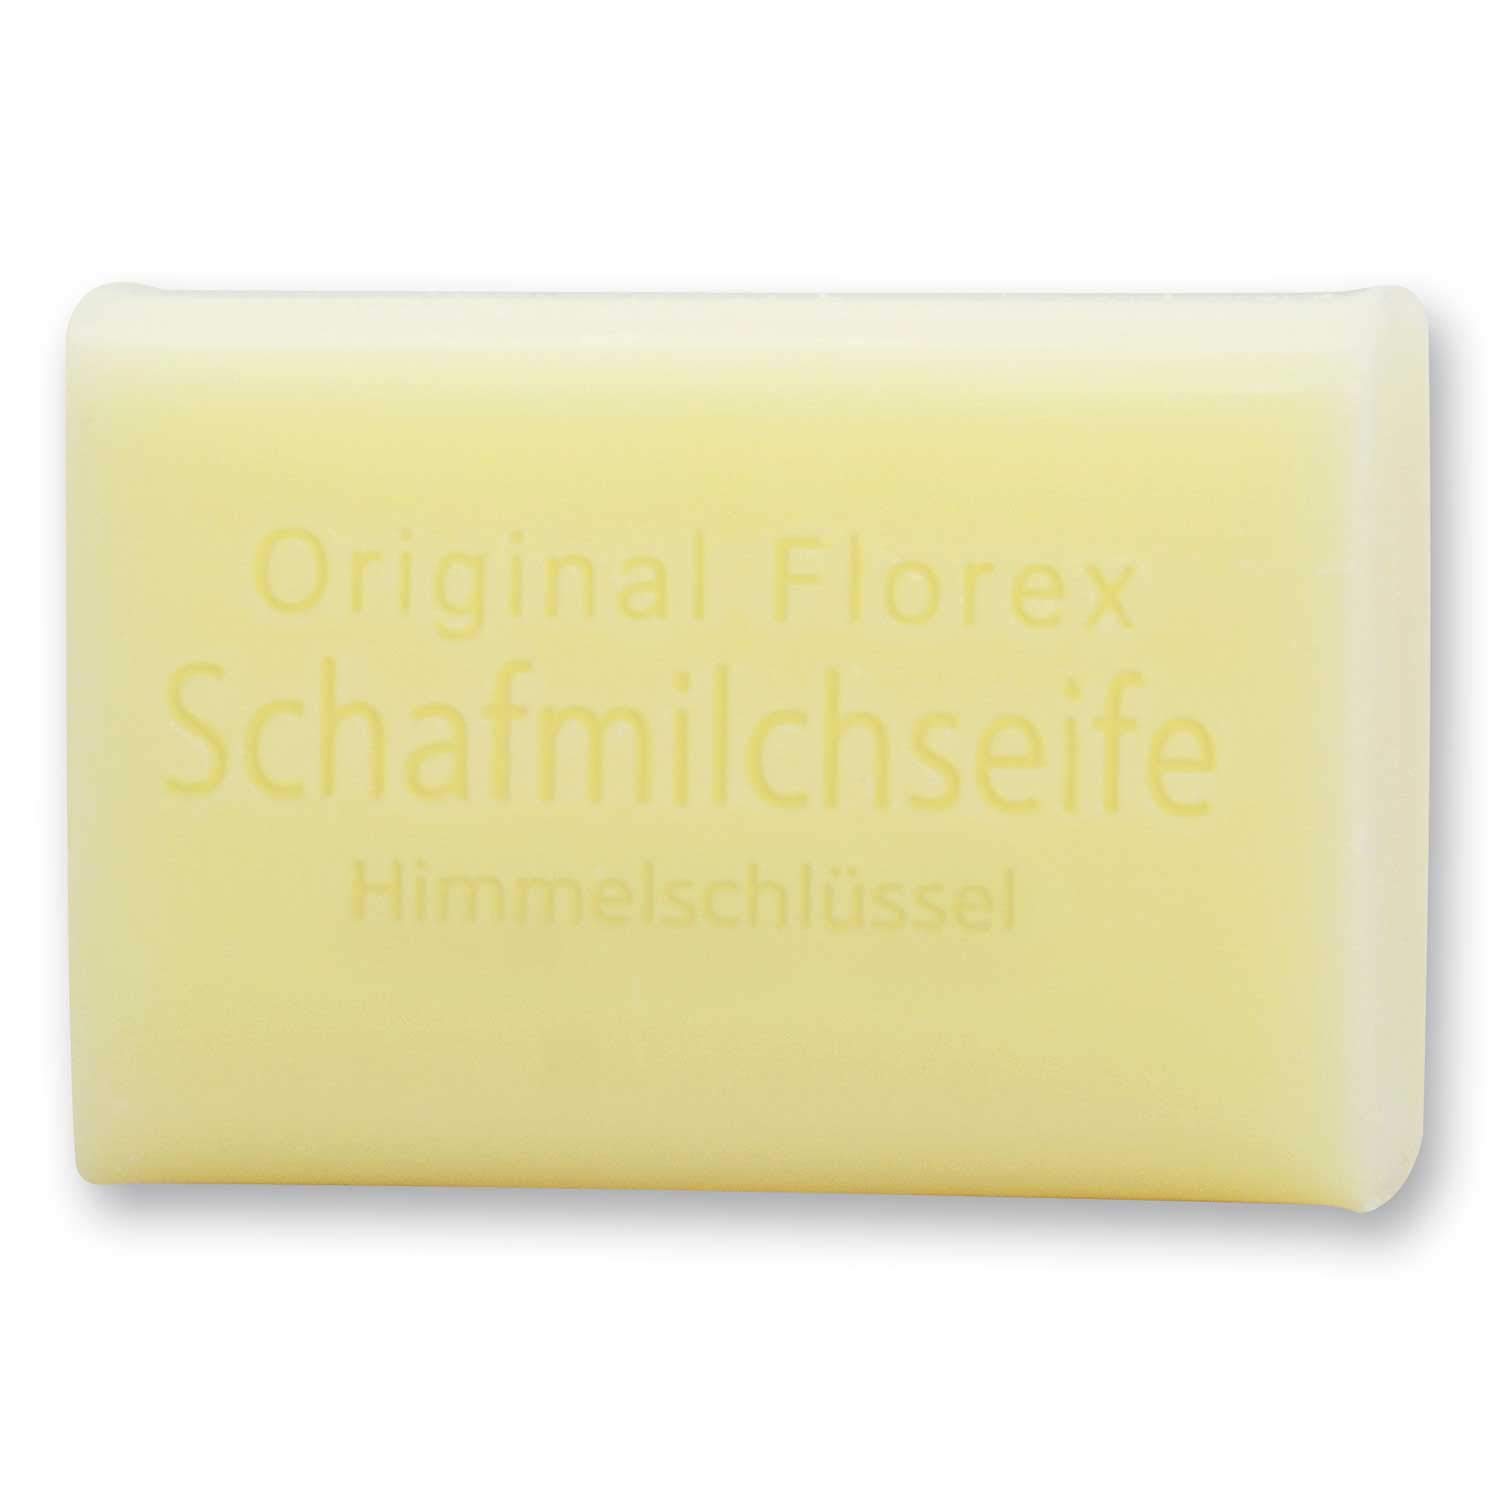 Florex 8039 Himmelschlüssel Schafmilchseife 100g Waschstück